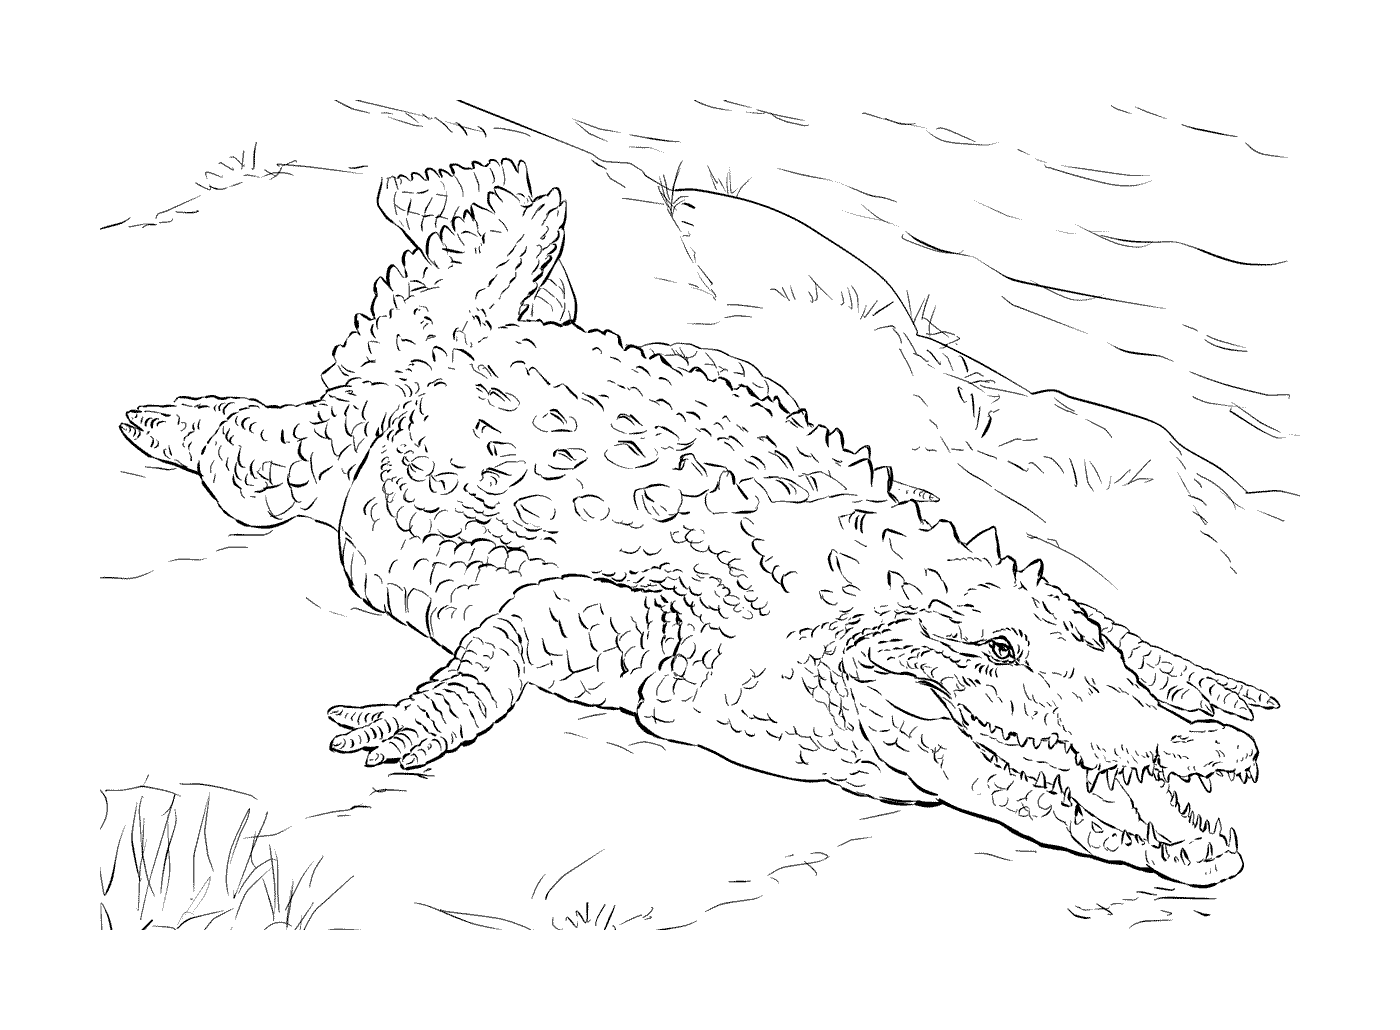  Un coccodrillo americano sdraiato sull'erba 